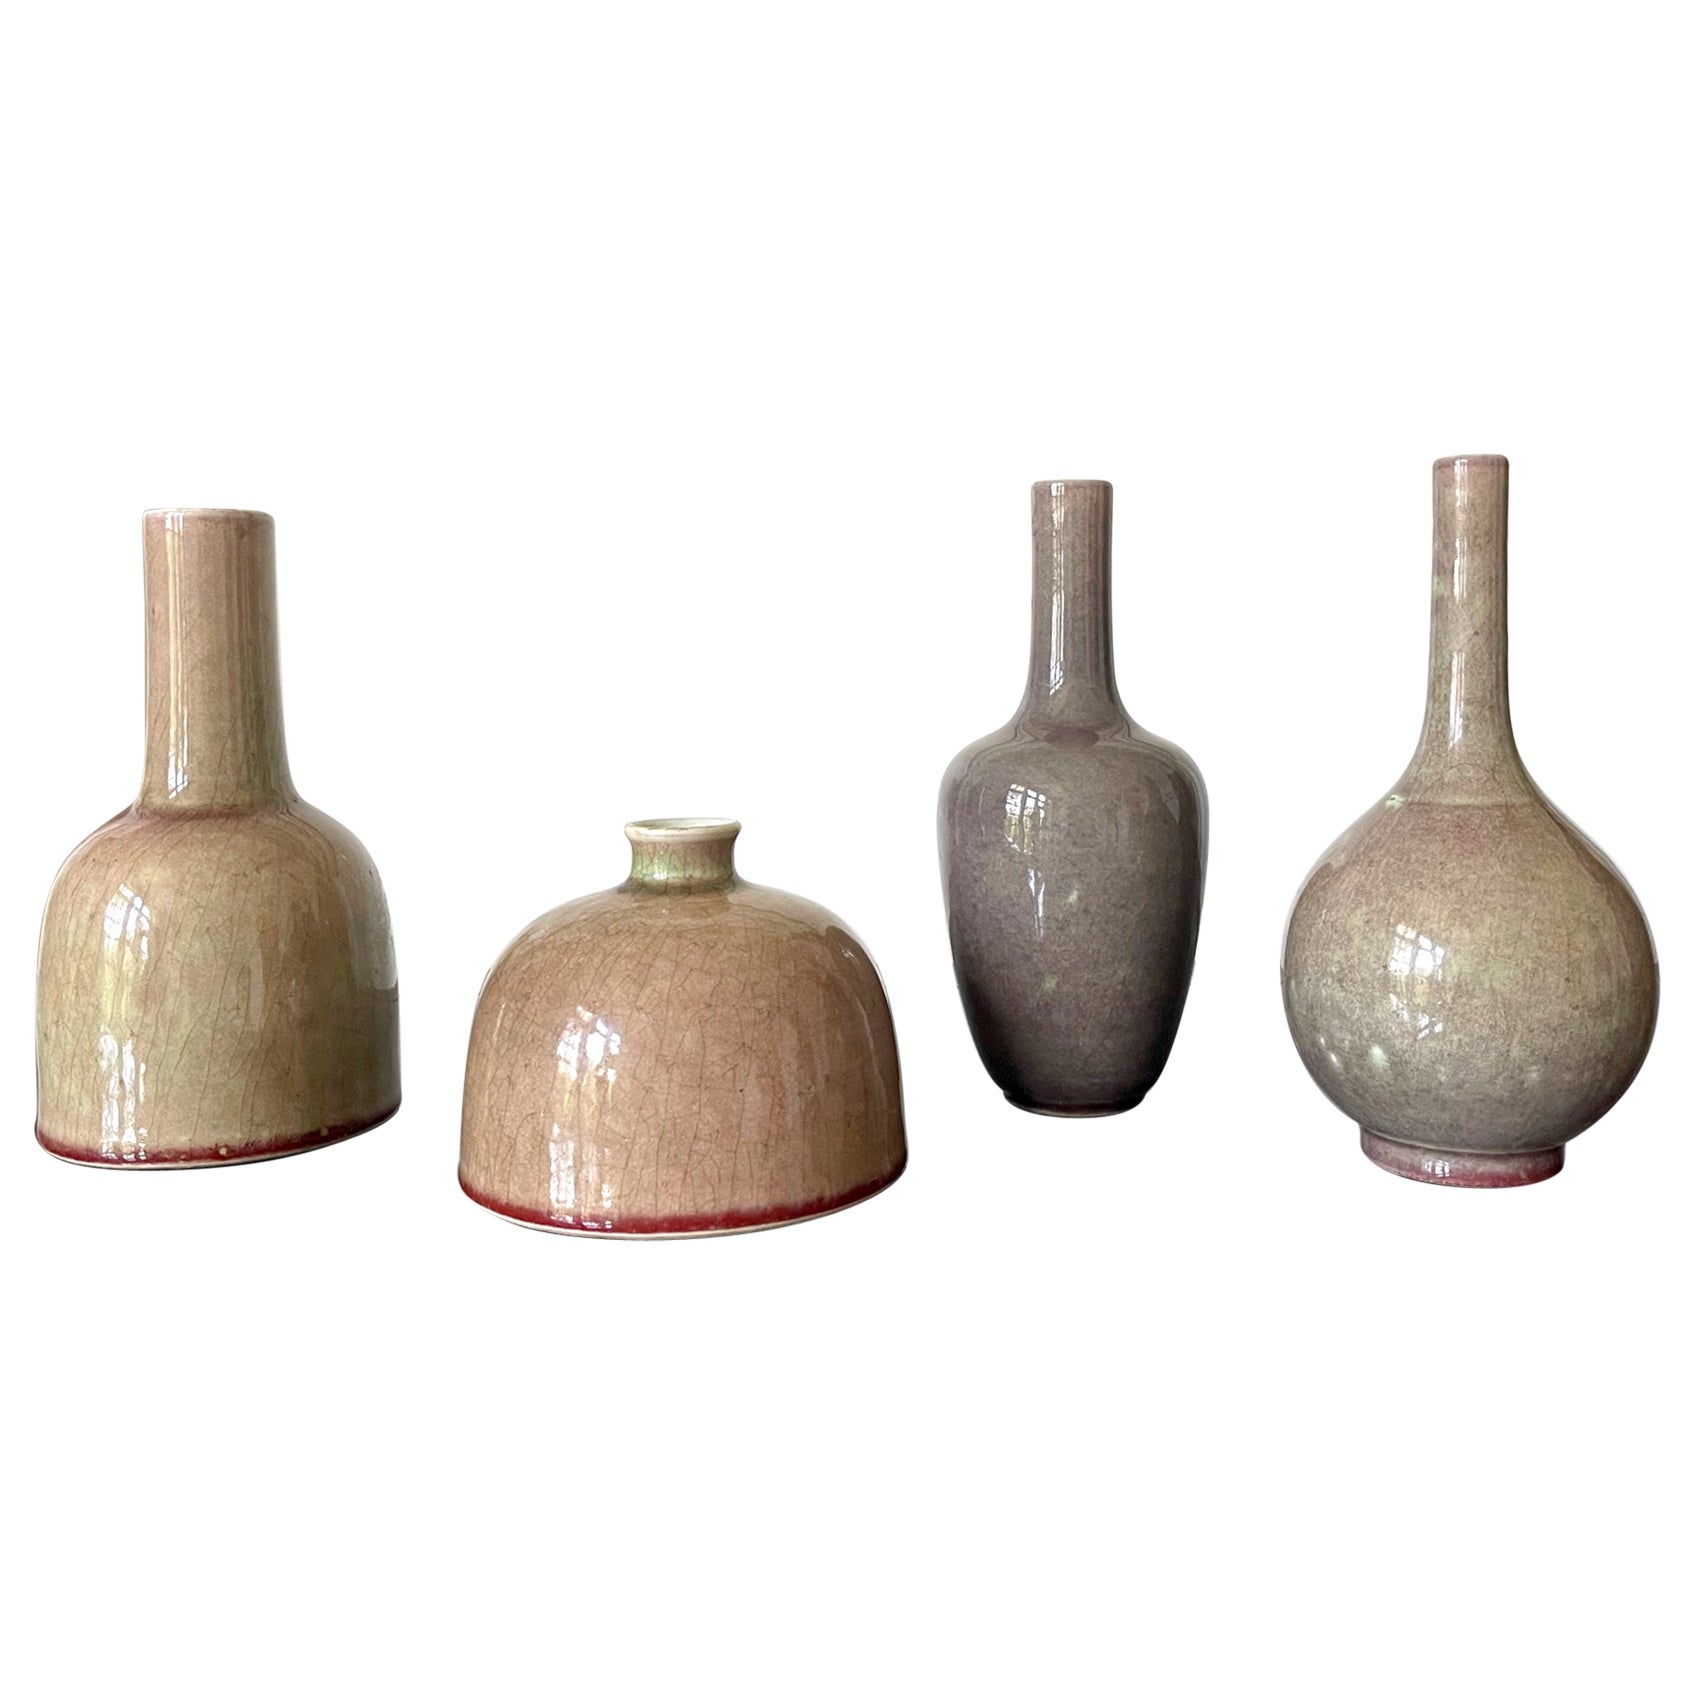 Kollektion von vier chinesischen Keramikvasen mit pfirsichfarbener glasierter Glasur